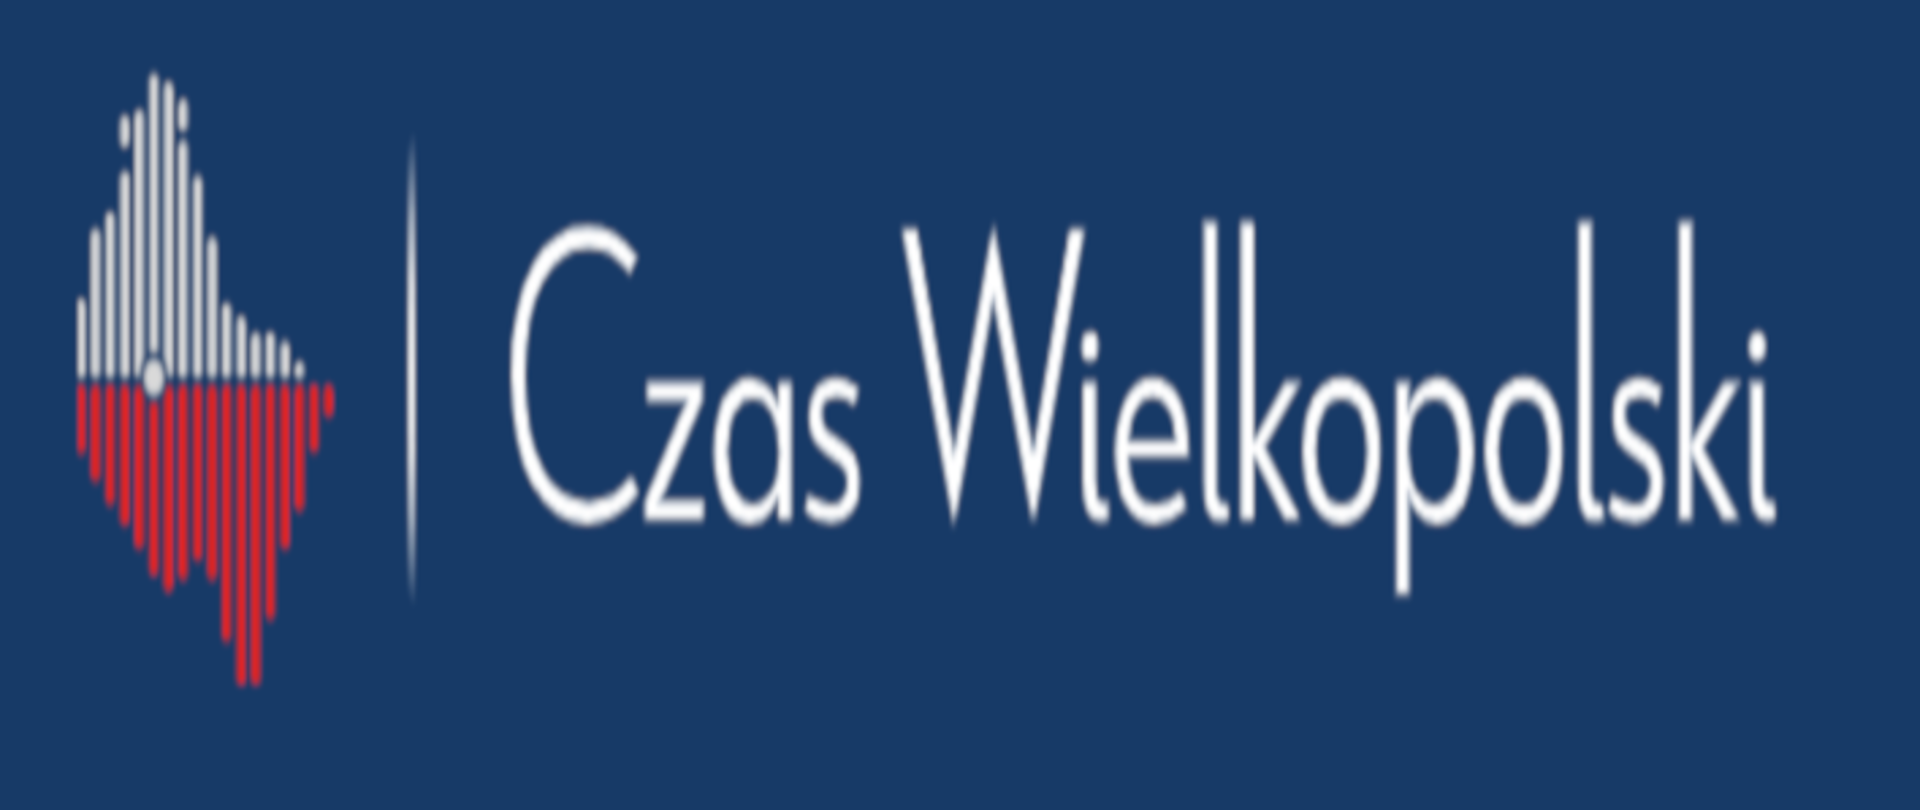 Czas Wielkopolski - logo. Województwo Wielkopolskie w biało-czerwonej barwie na niebieskim tle.